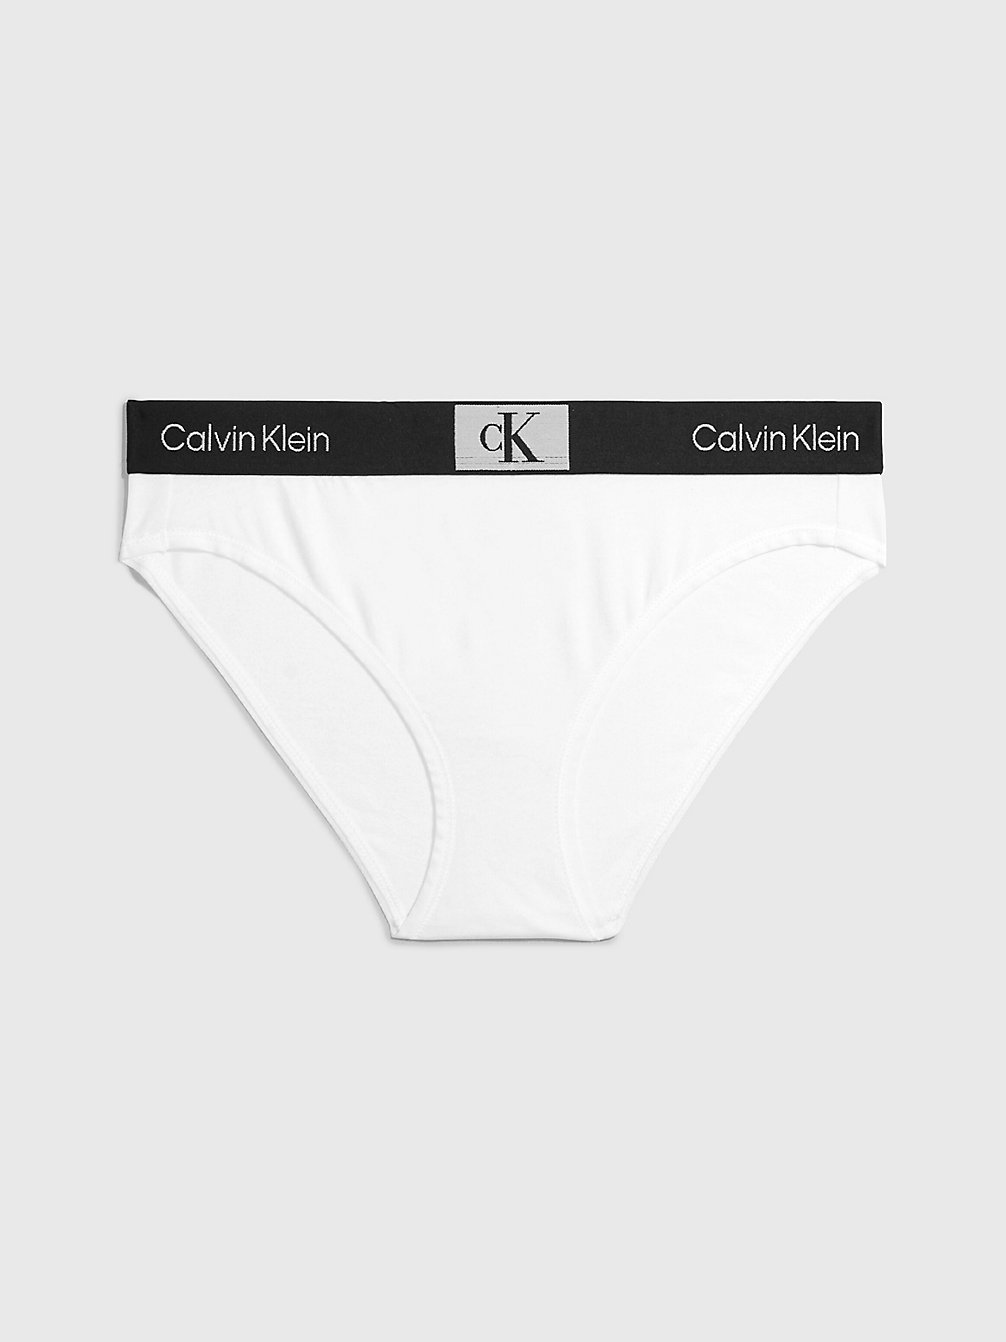 WHITE > Figi - Ck96 > undefined Kobiety - Calvin Klein